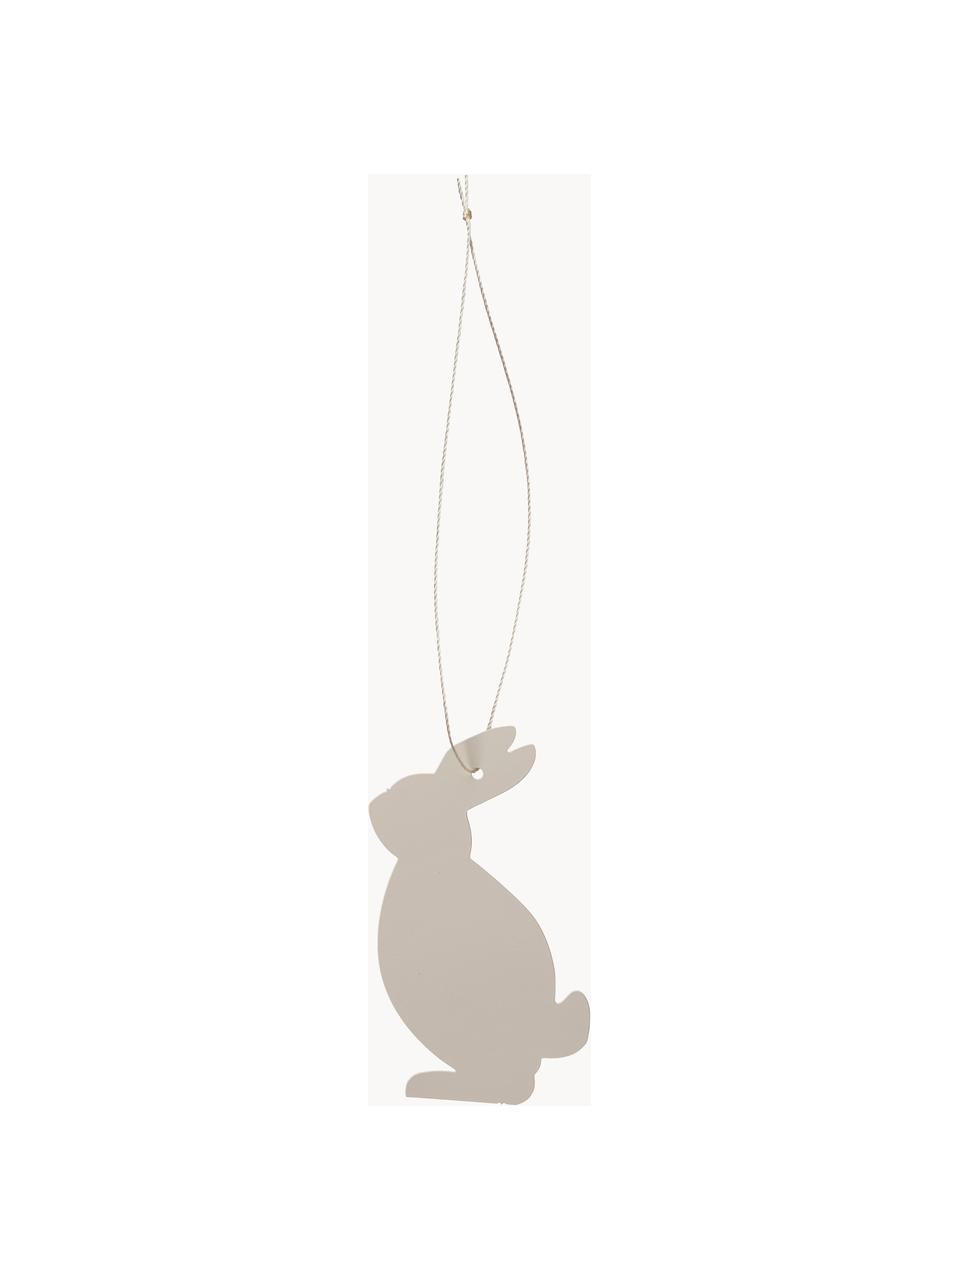 Dekoracja wisząca Hare, 4 szt., Stal szlachetna malowana proszkowo, Greige, S 4 x W 6 cm